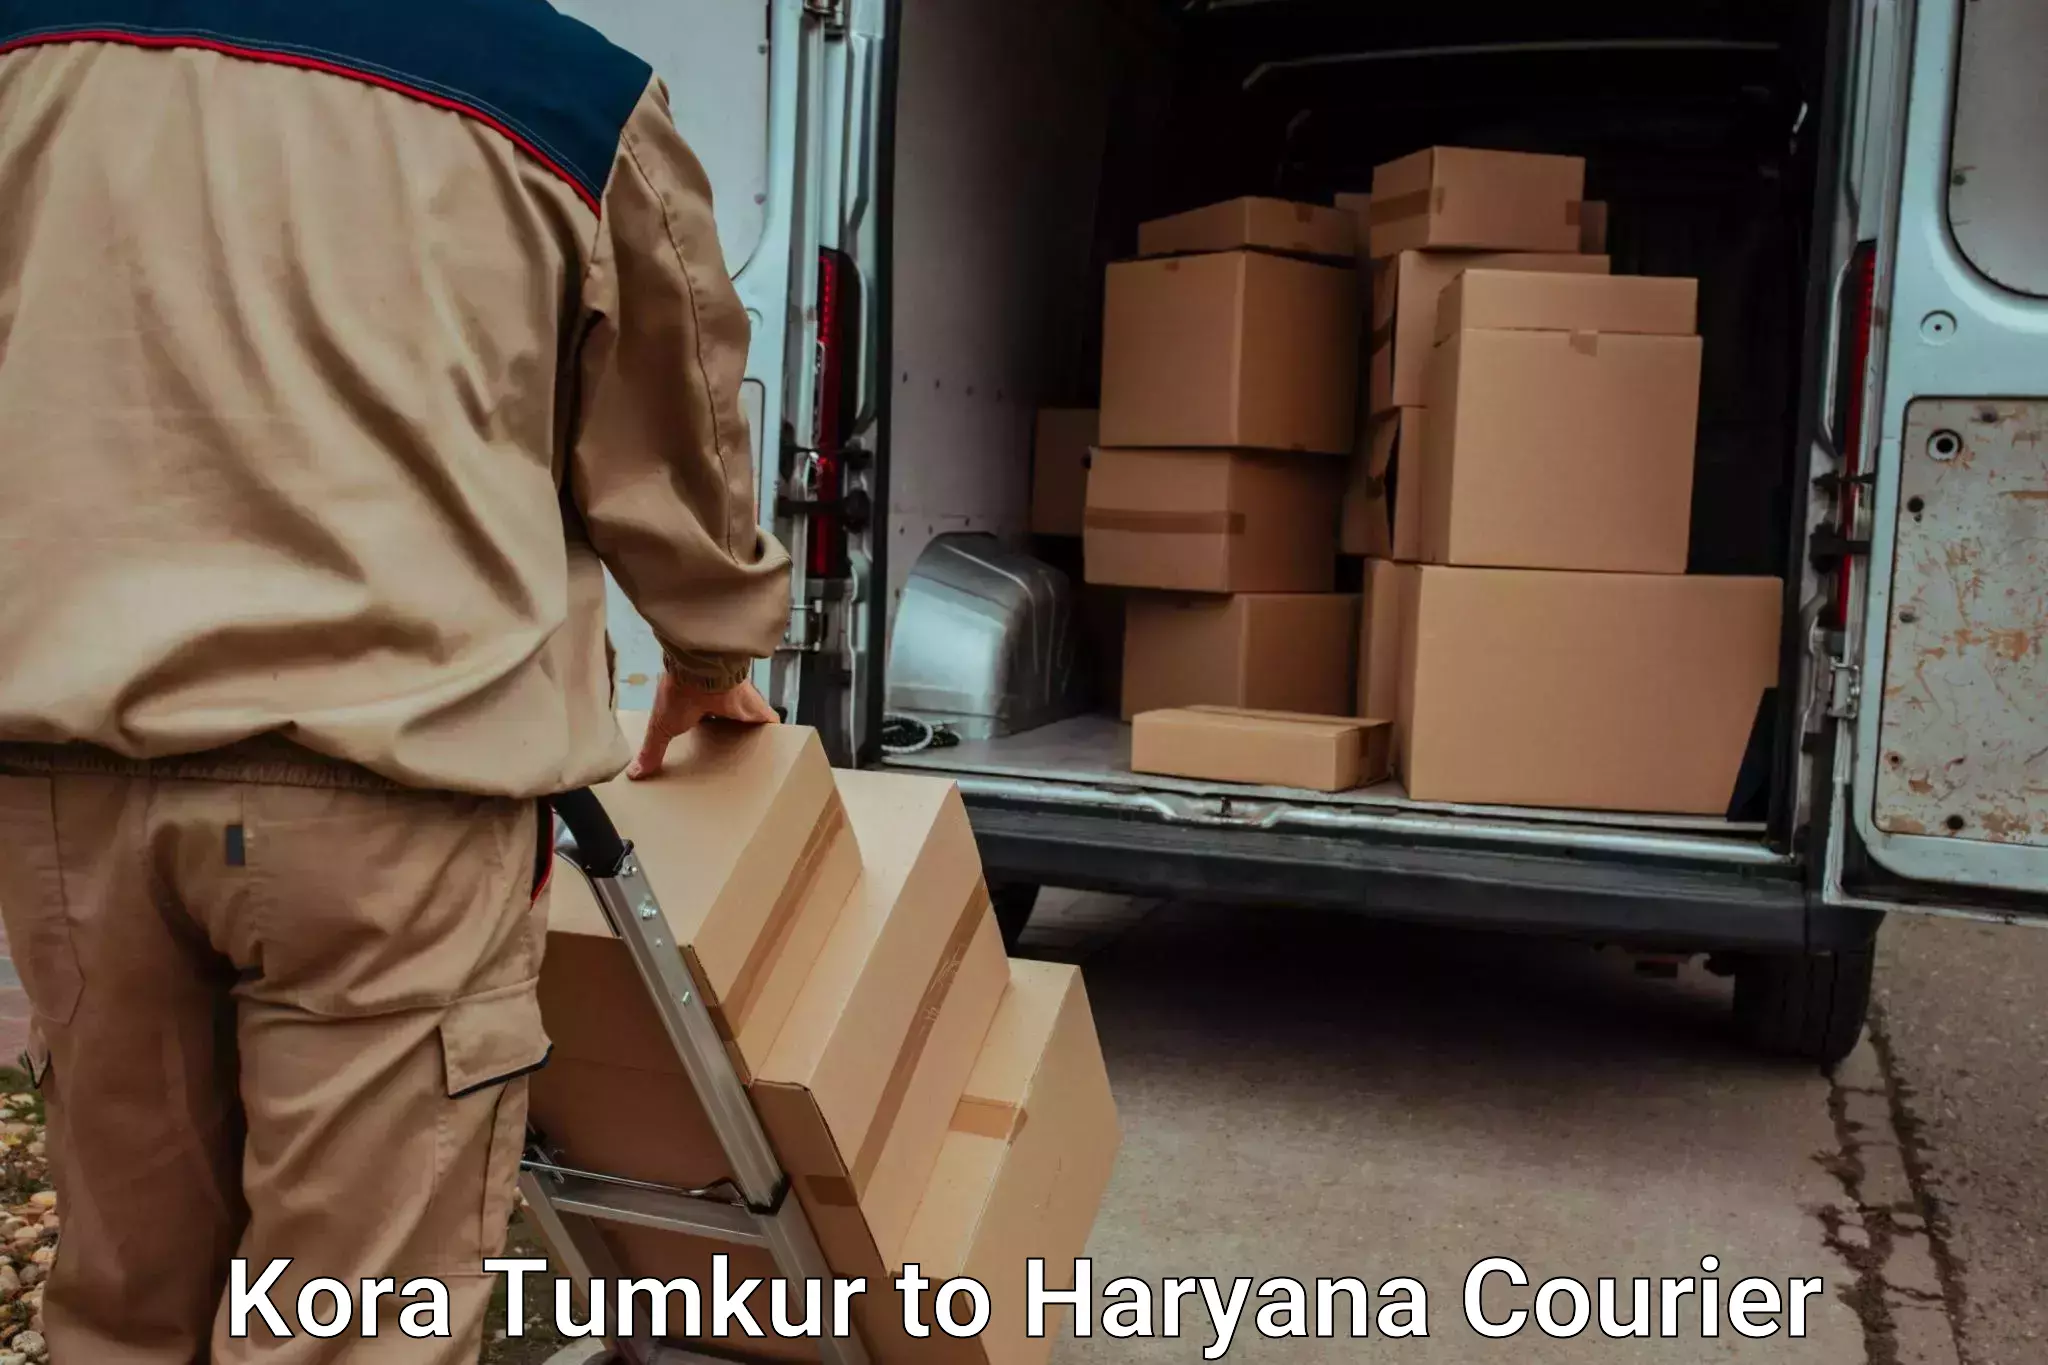 Online luggage shipping Kora Tumkur to NCR Haryana